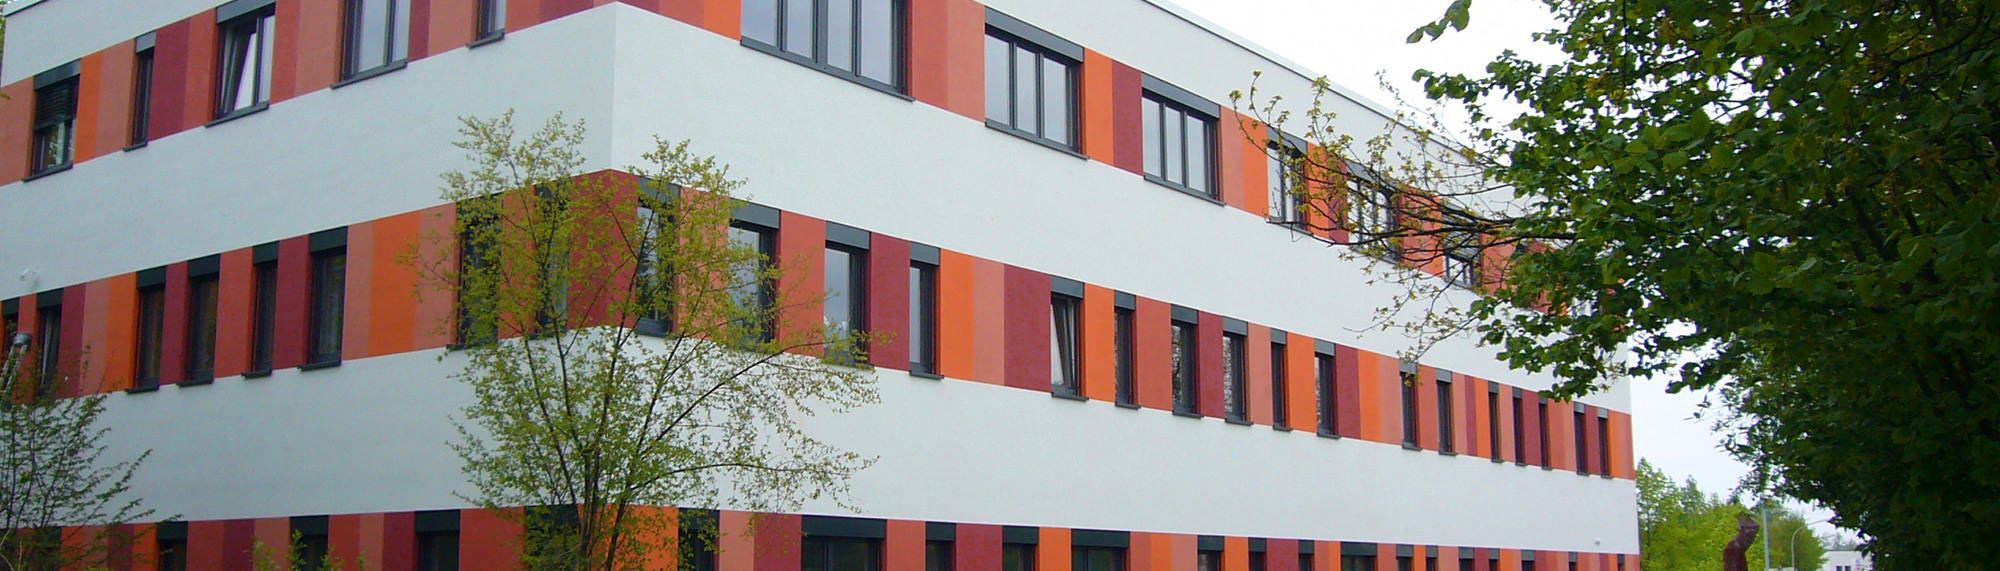 cubium - Kompetenzzentrum Bayreuth